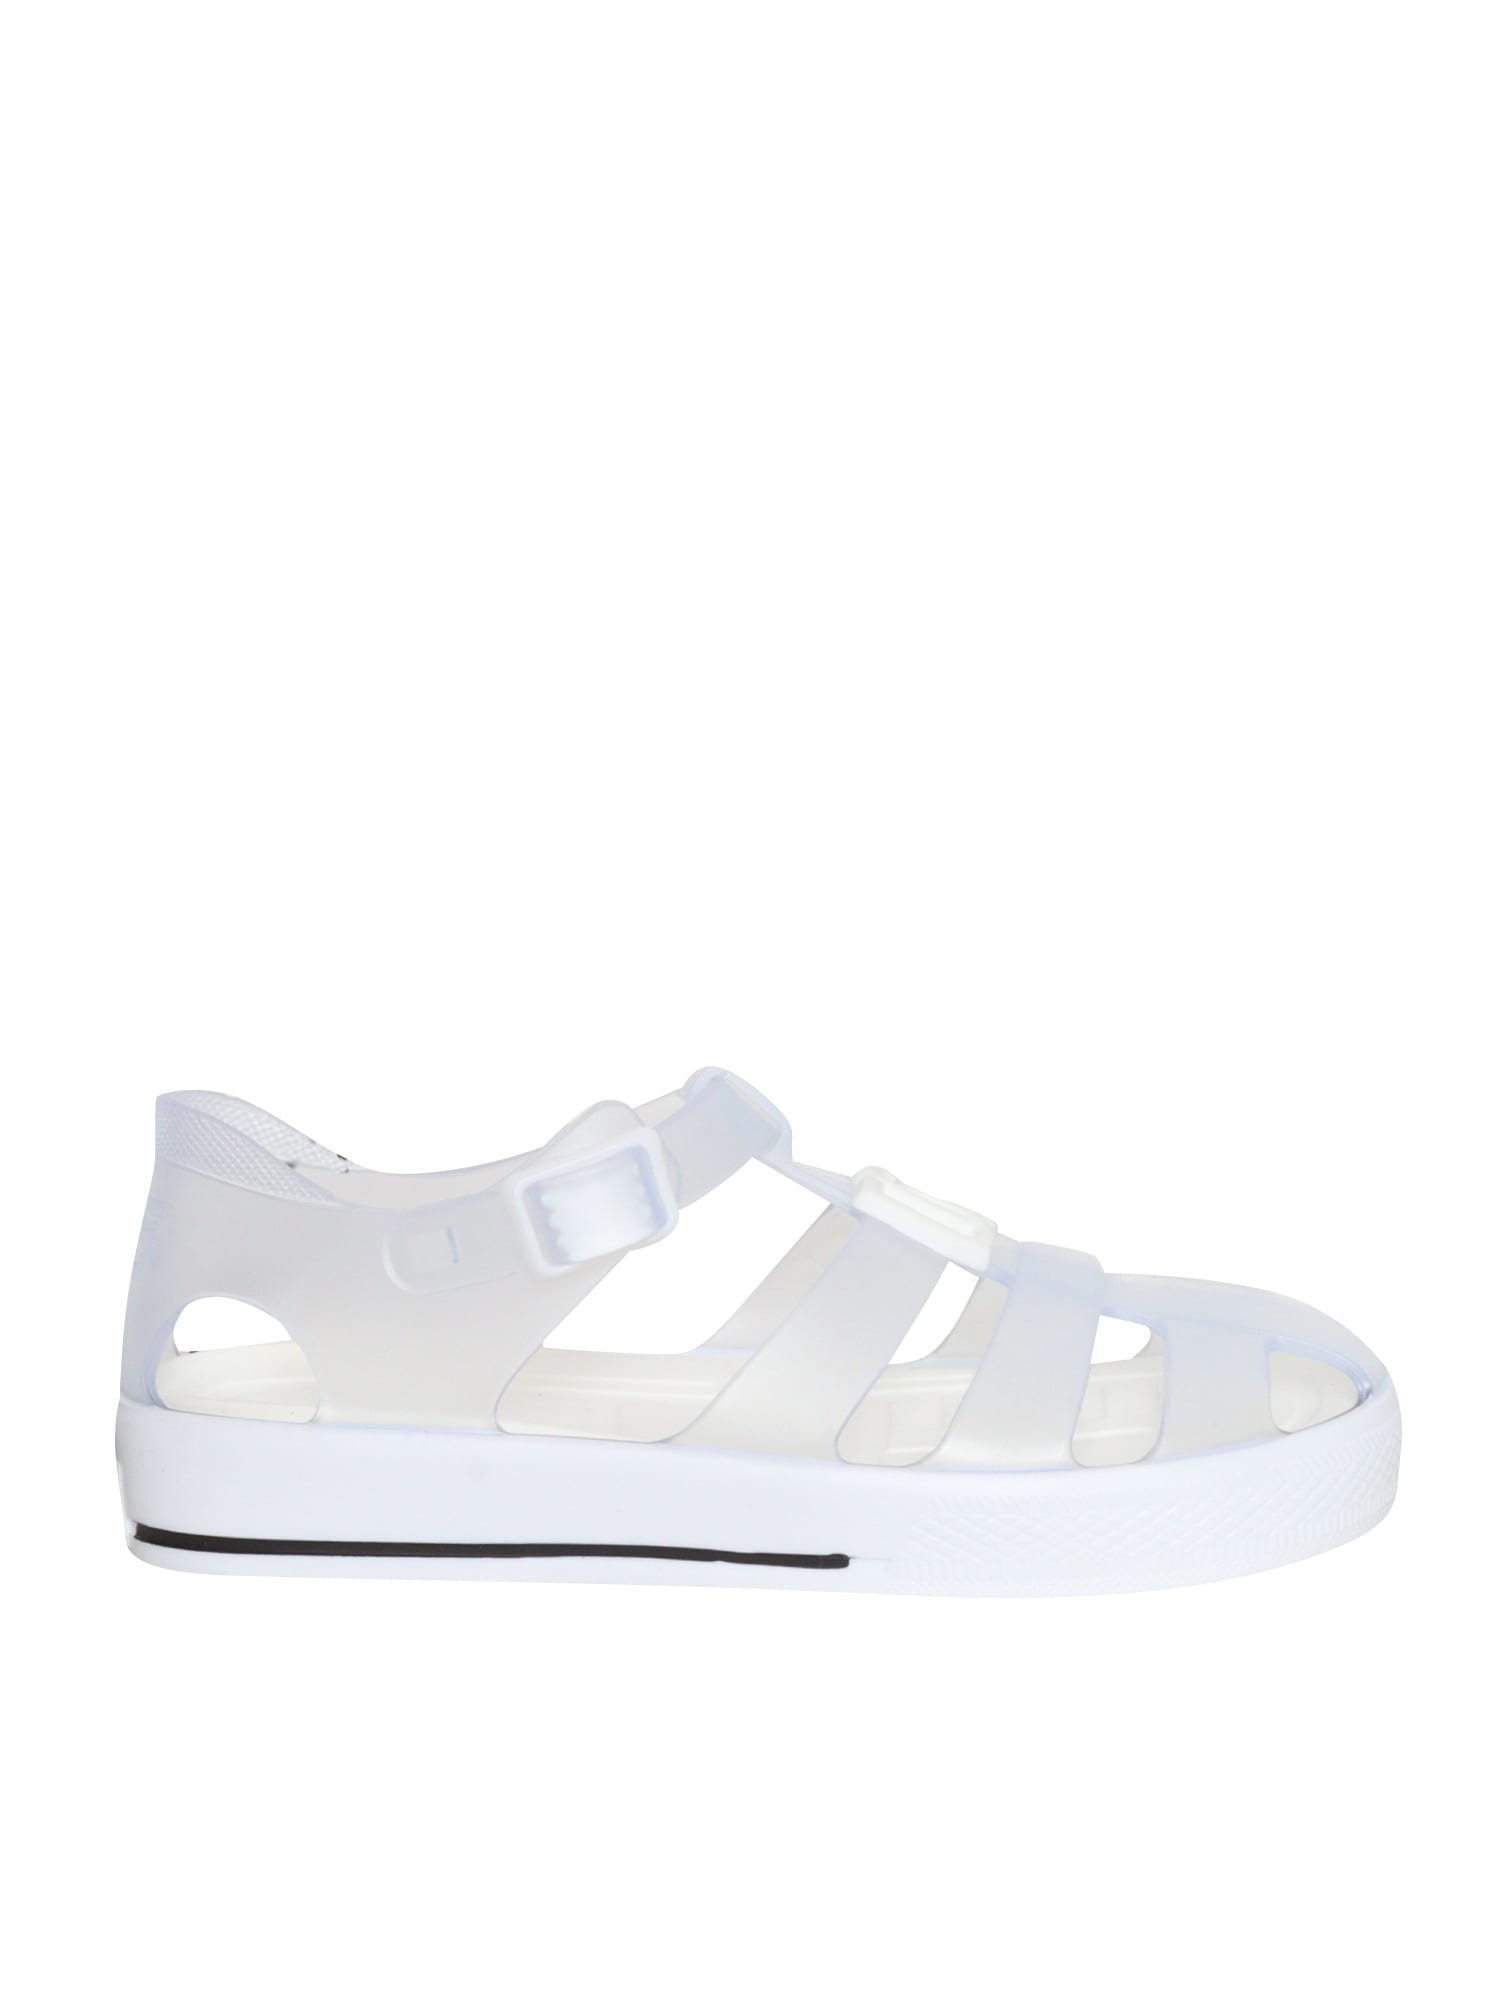 Dolce & Gabbana White Spider Sandals